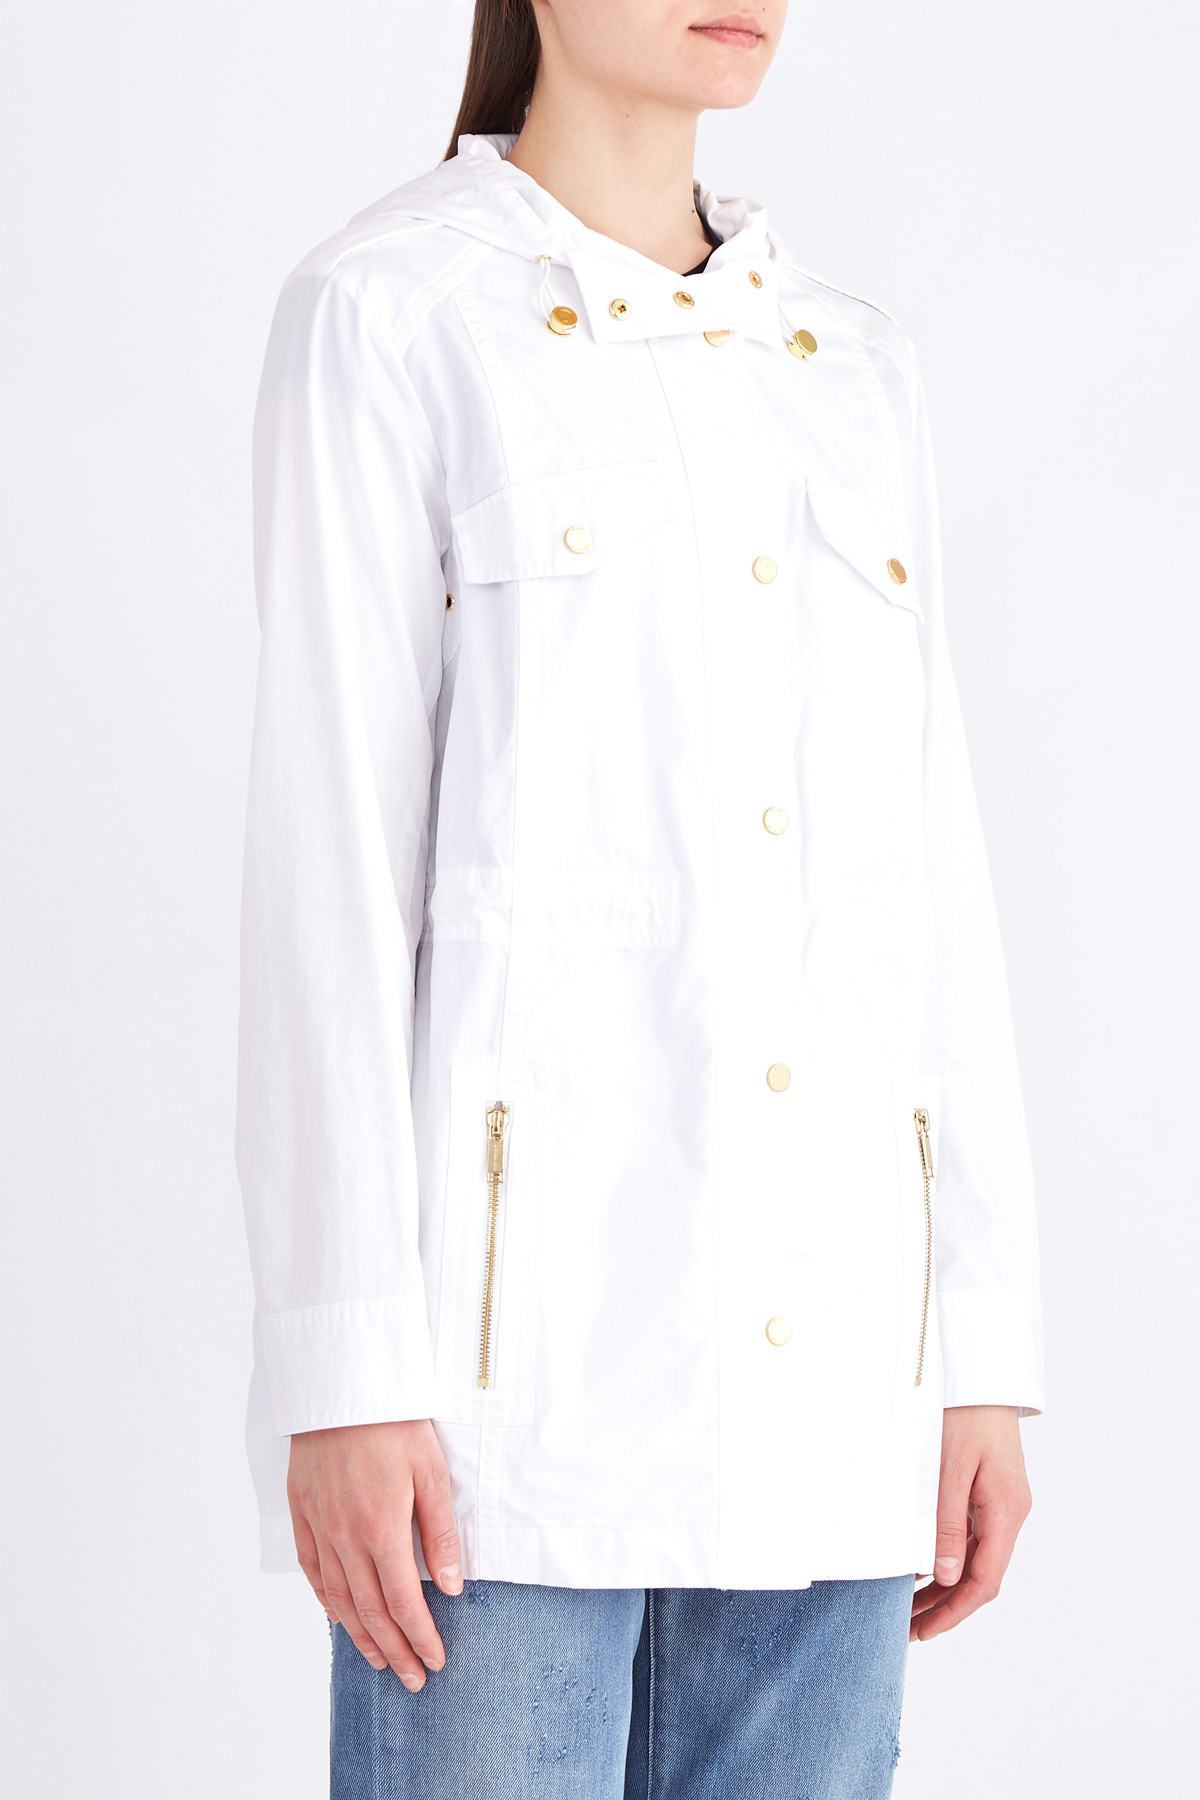 Куртка из хлопковой ткани с фурнитурой золотистого цвета MICHAEL Michael Kors, размер 4;8 - фото 3